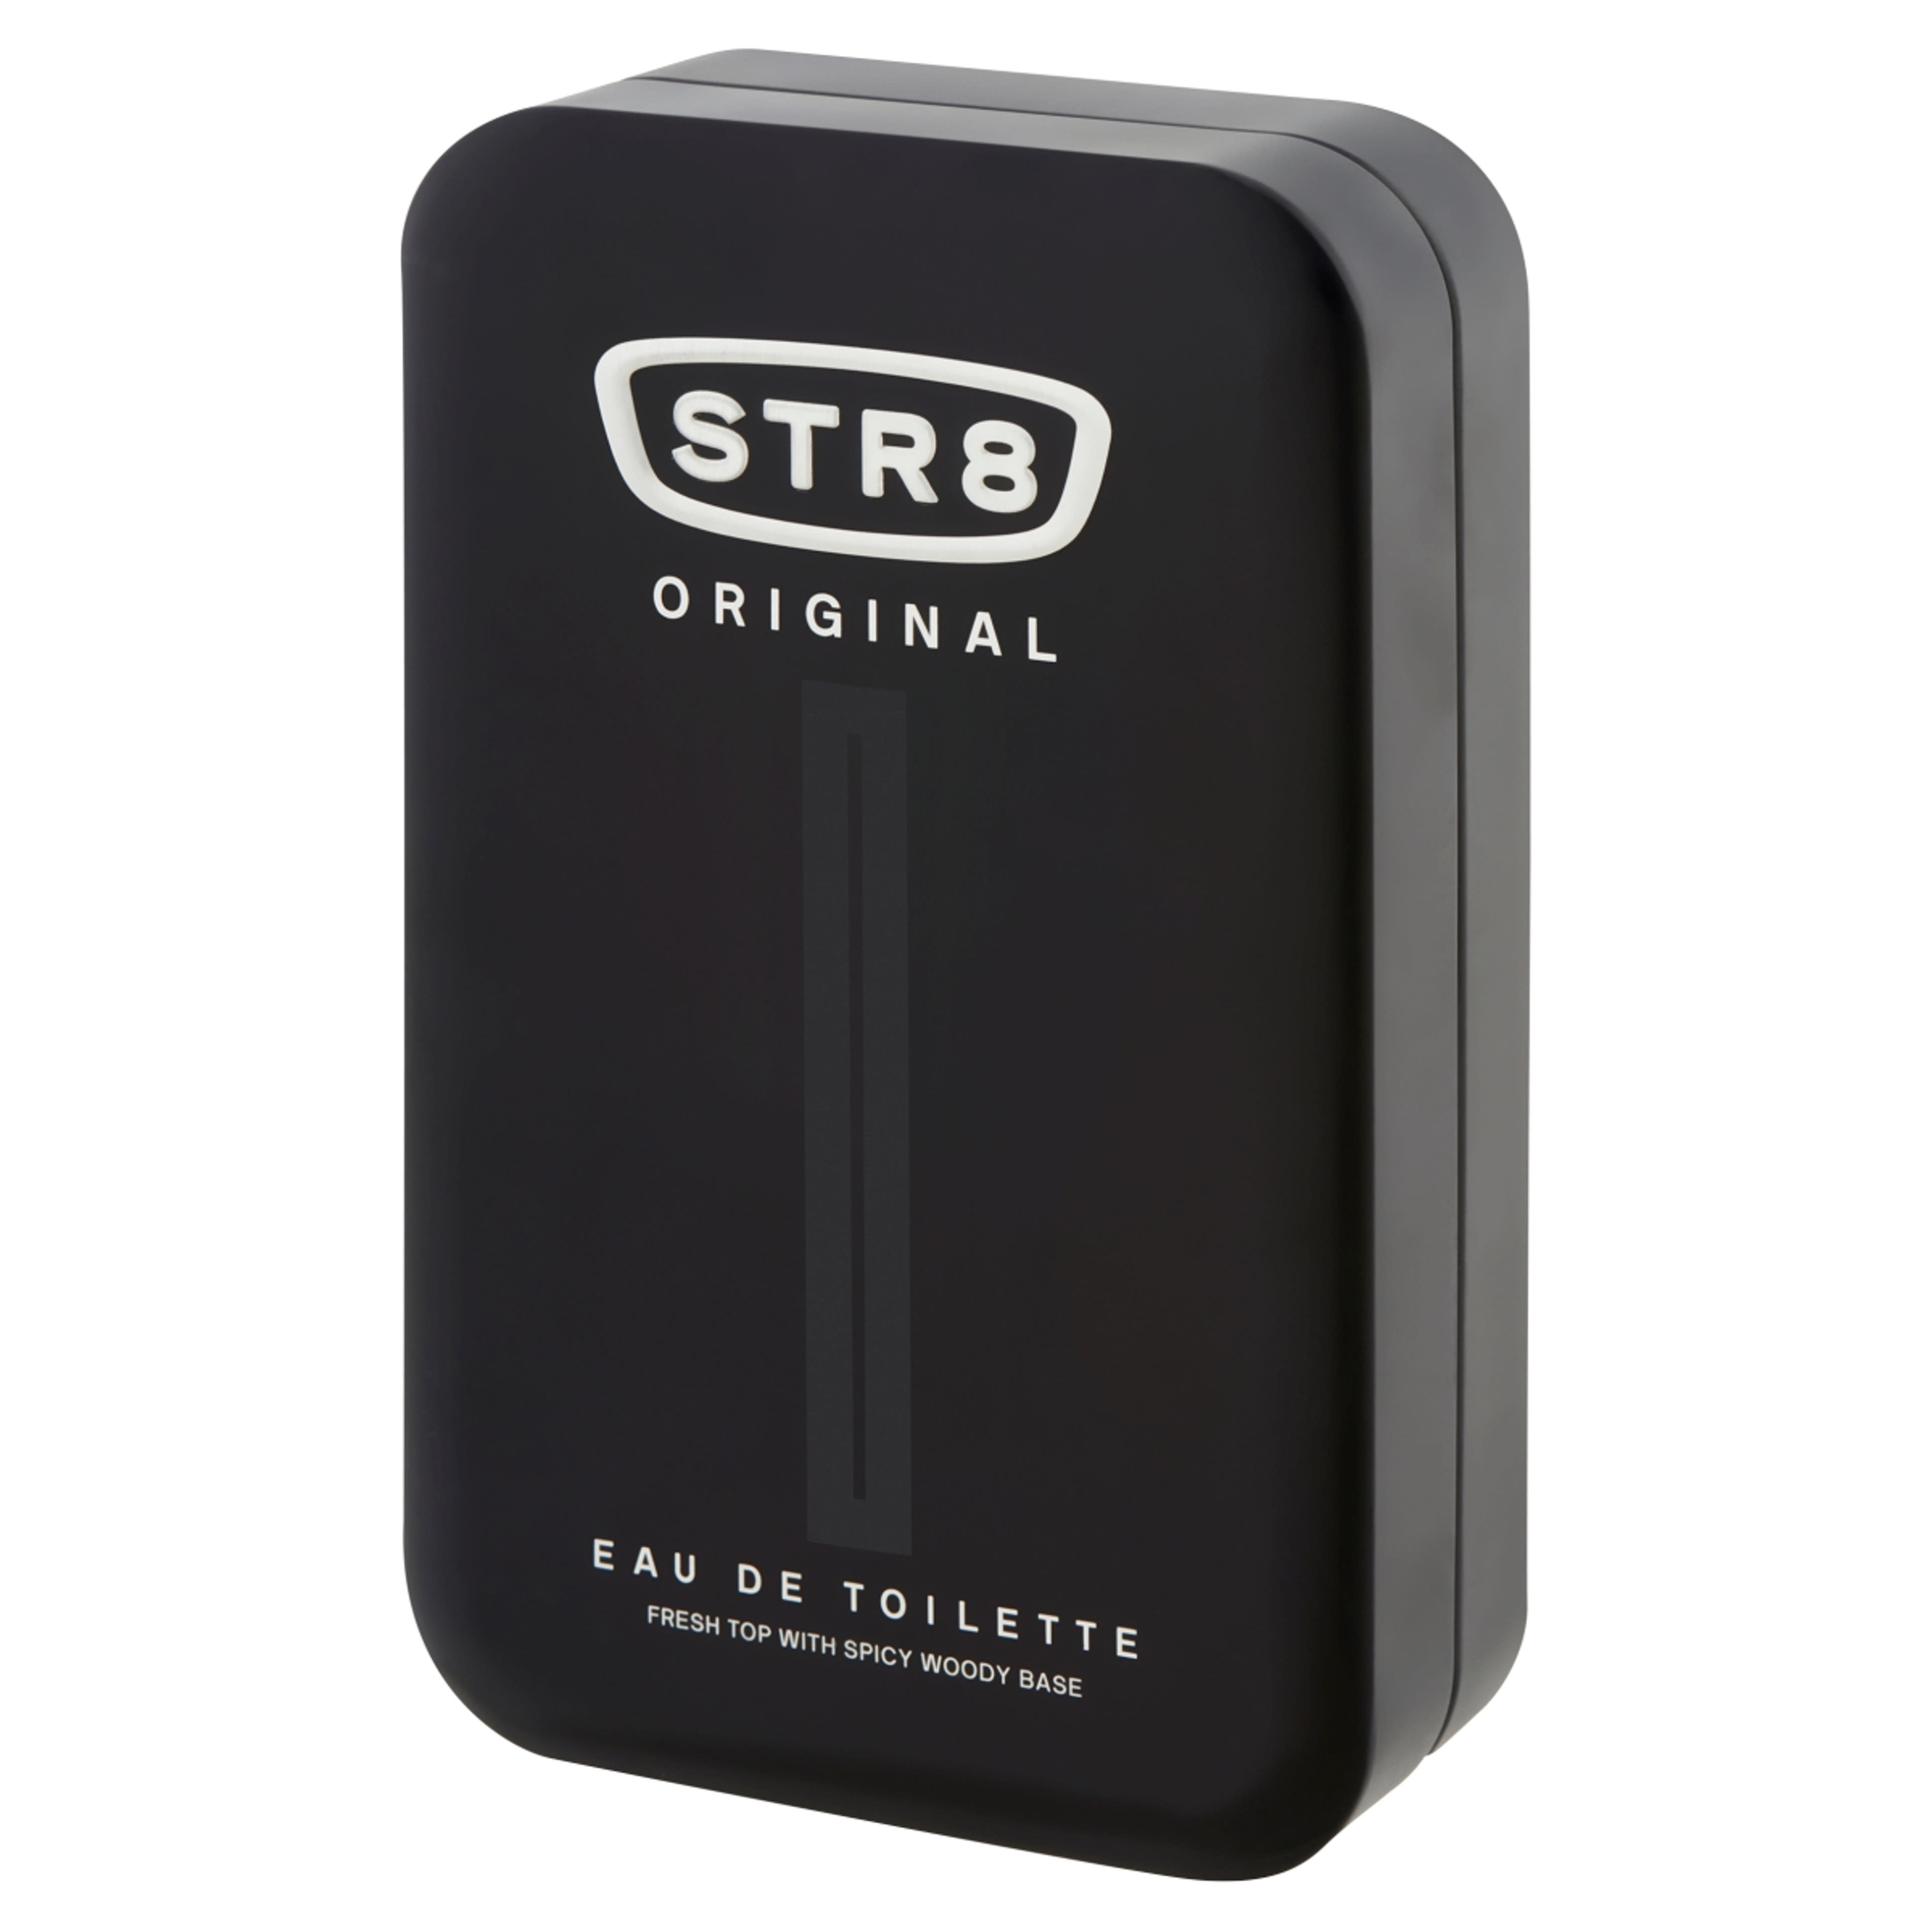 STR8 Original eau de toilette - 100 ml-2